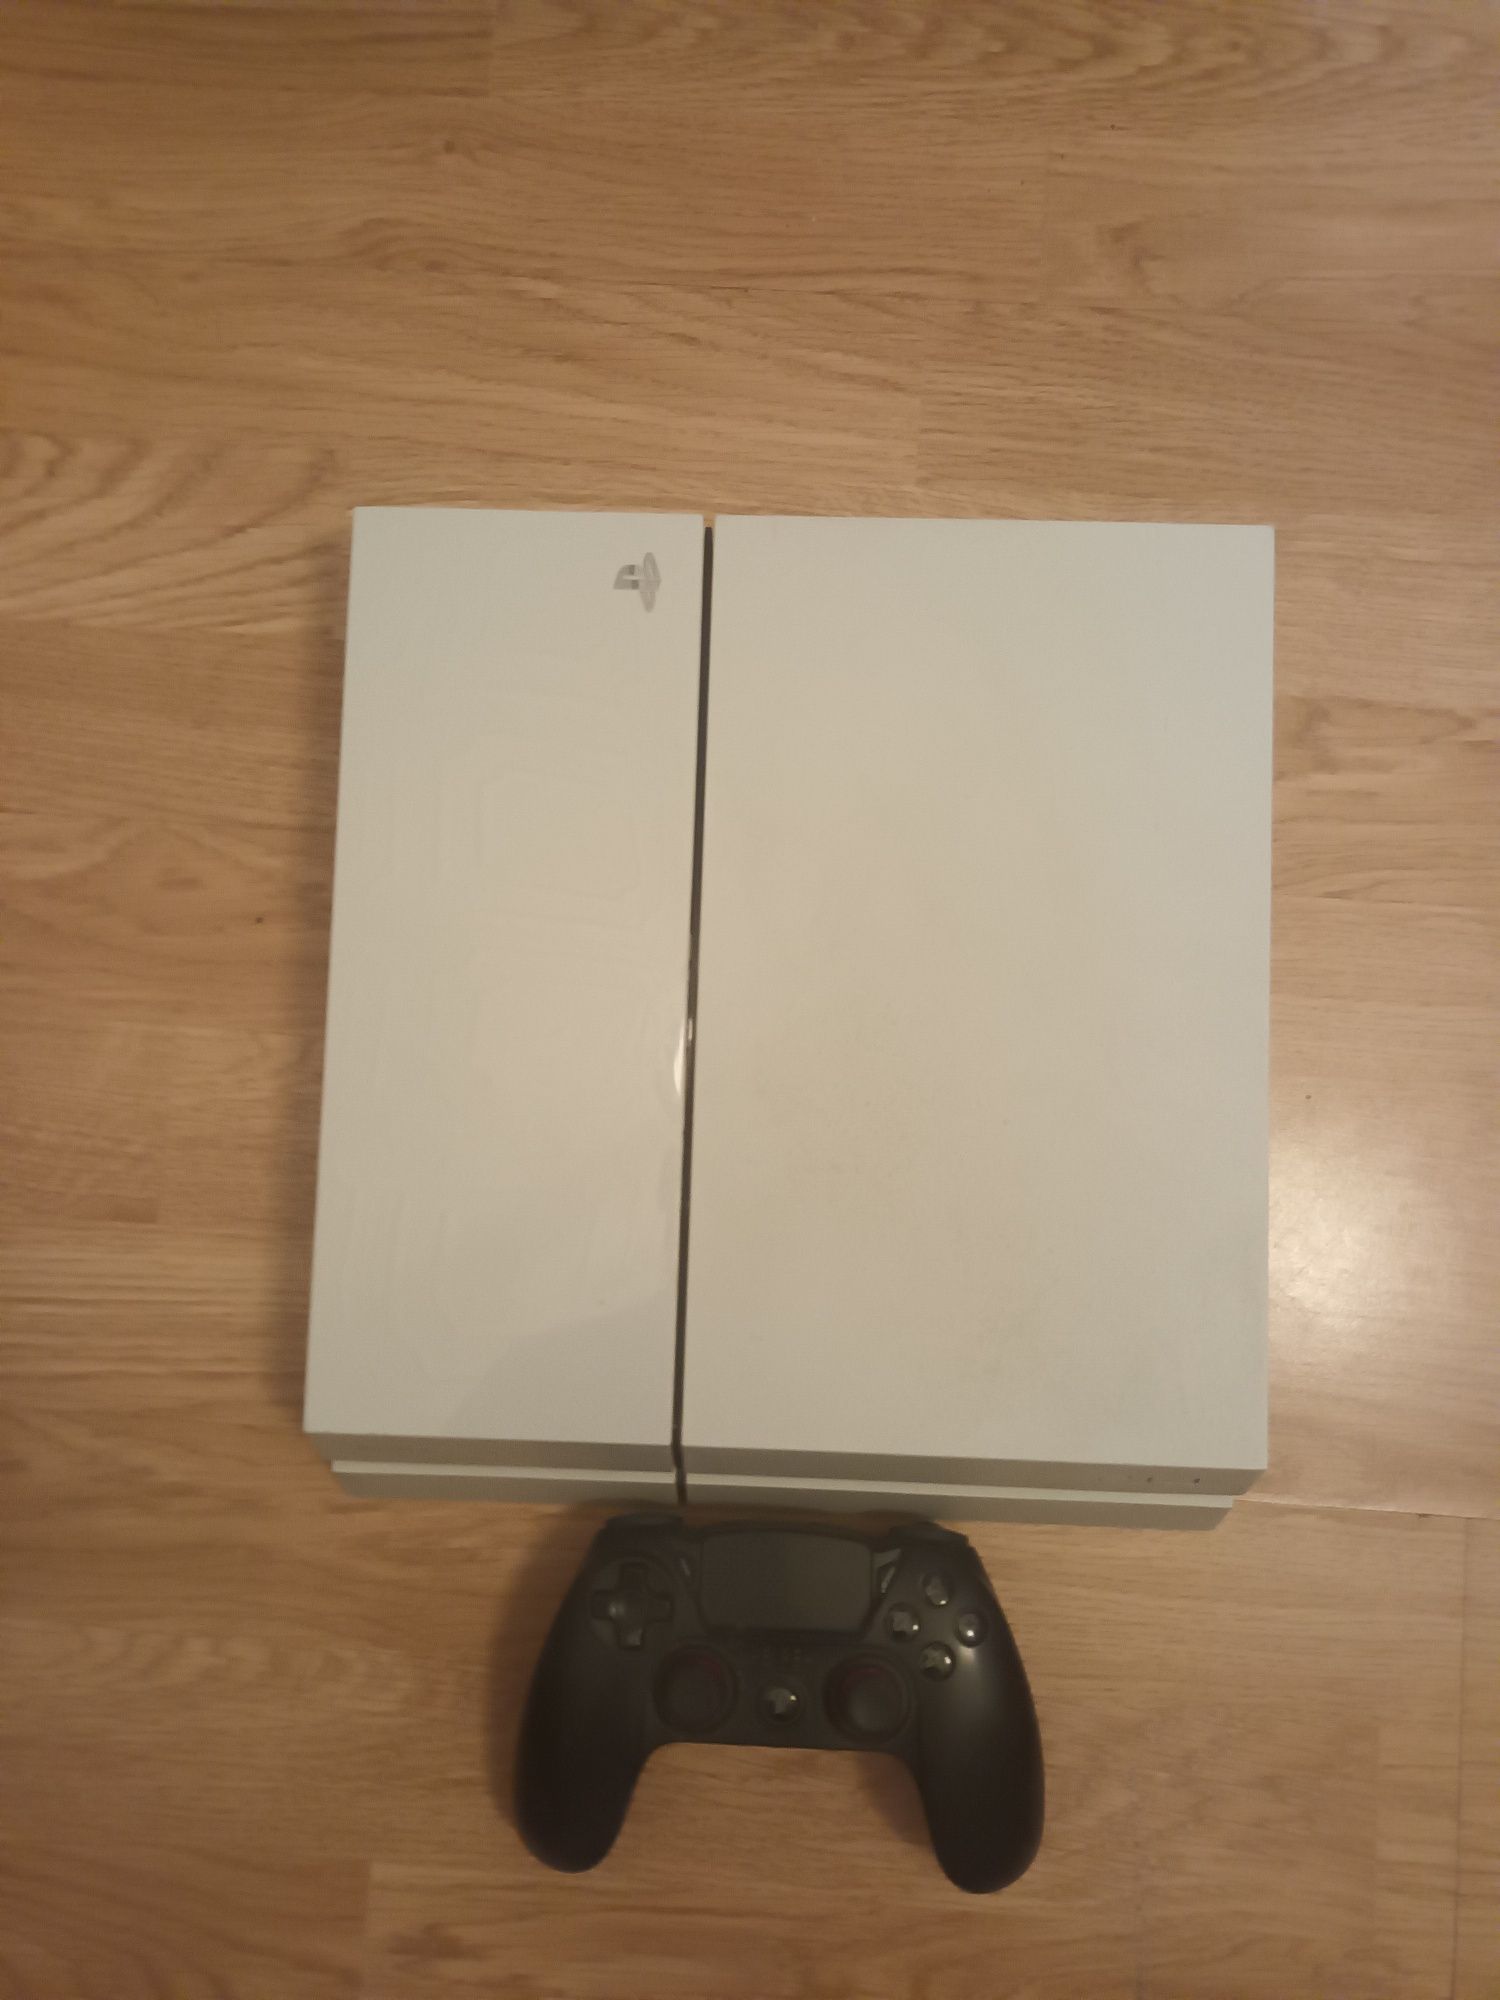 Sprzedam konsolę PlayStation 4 1tb ps4